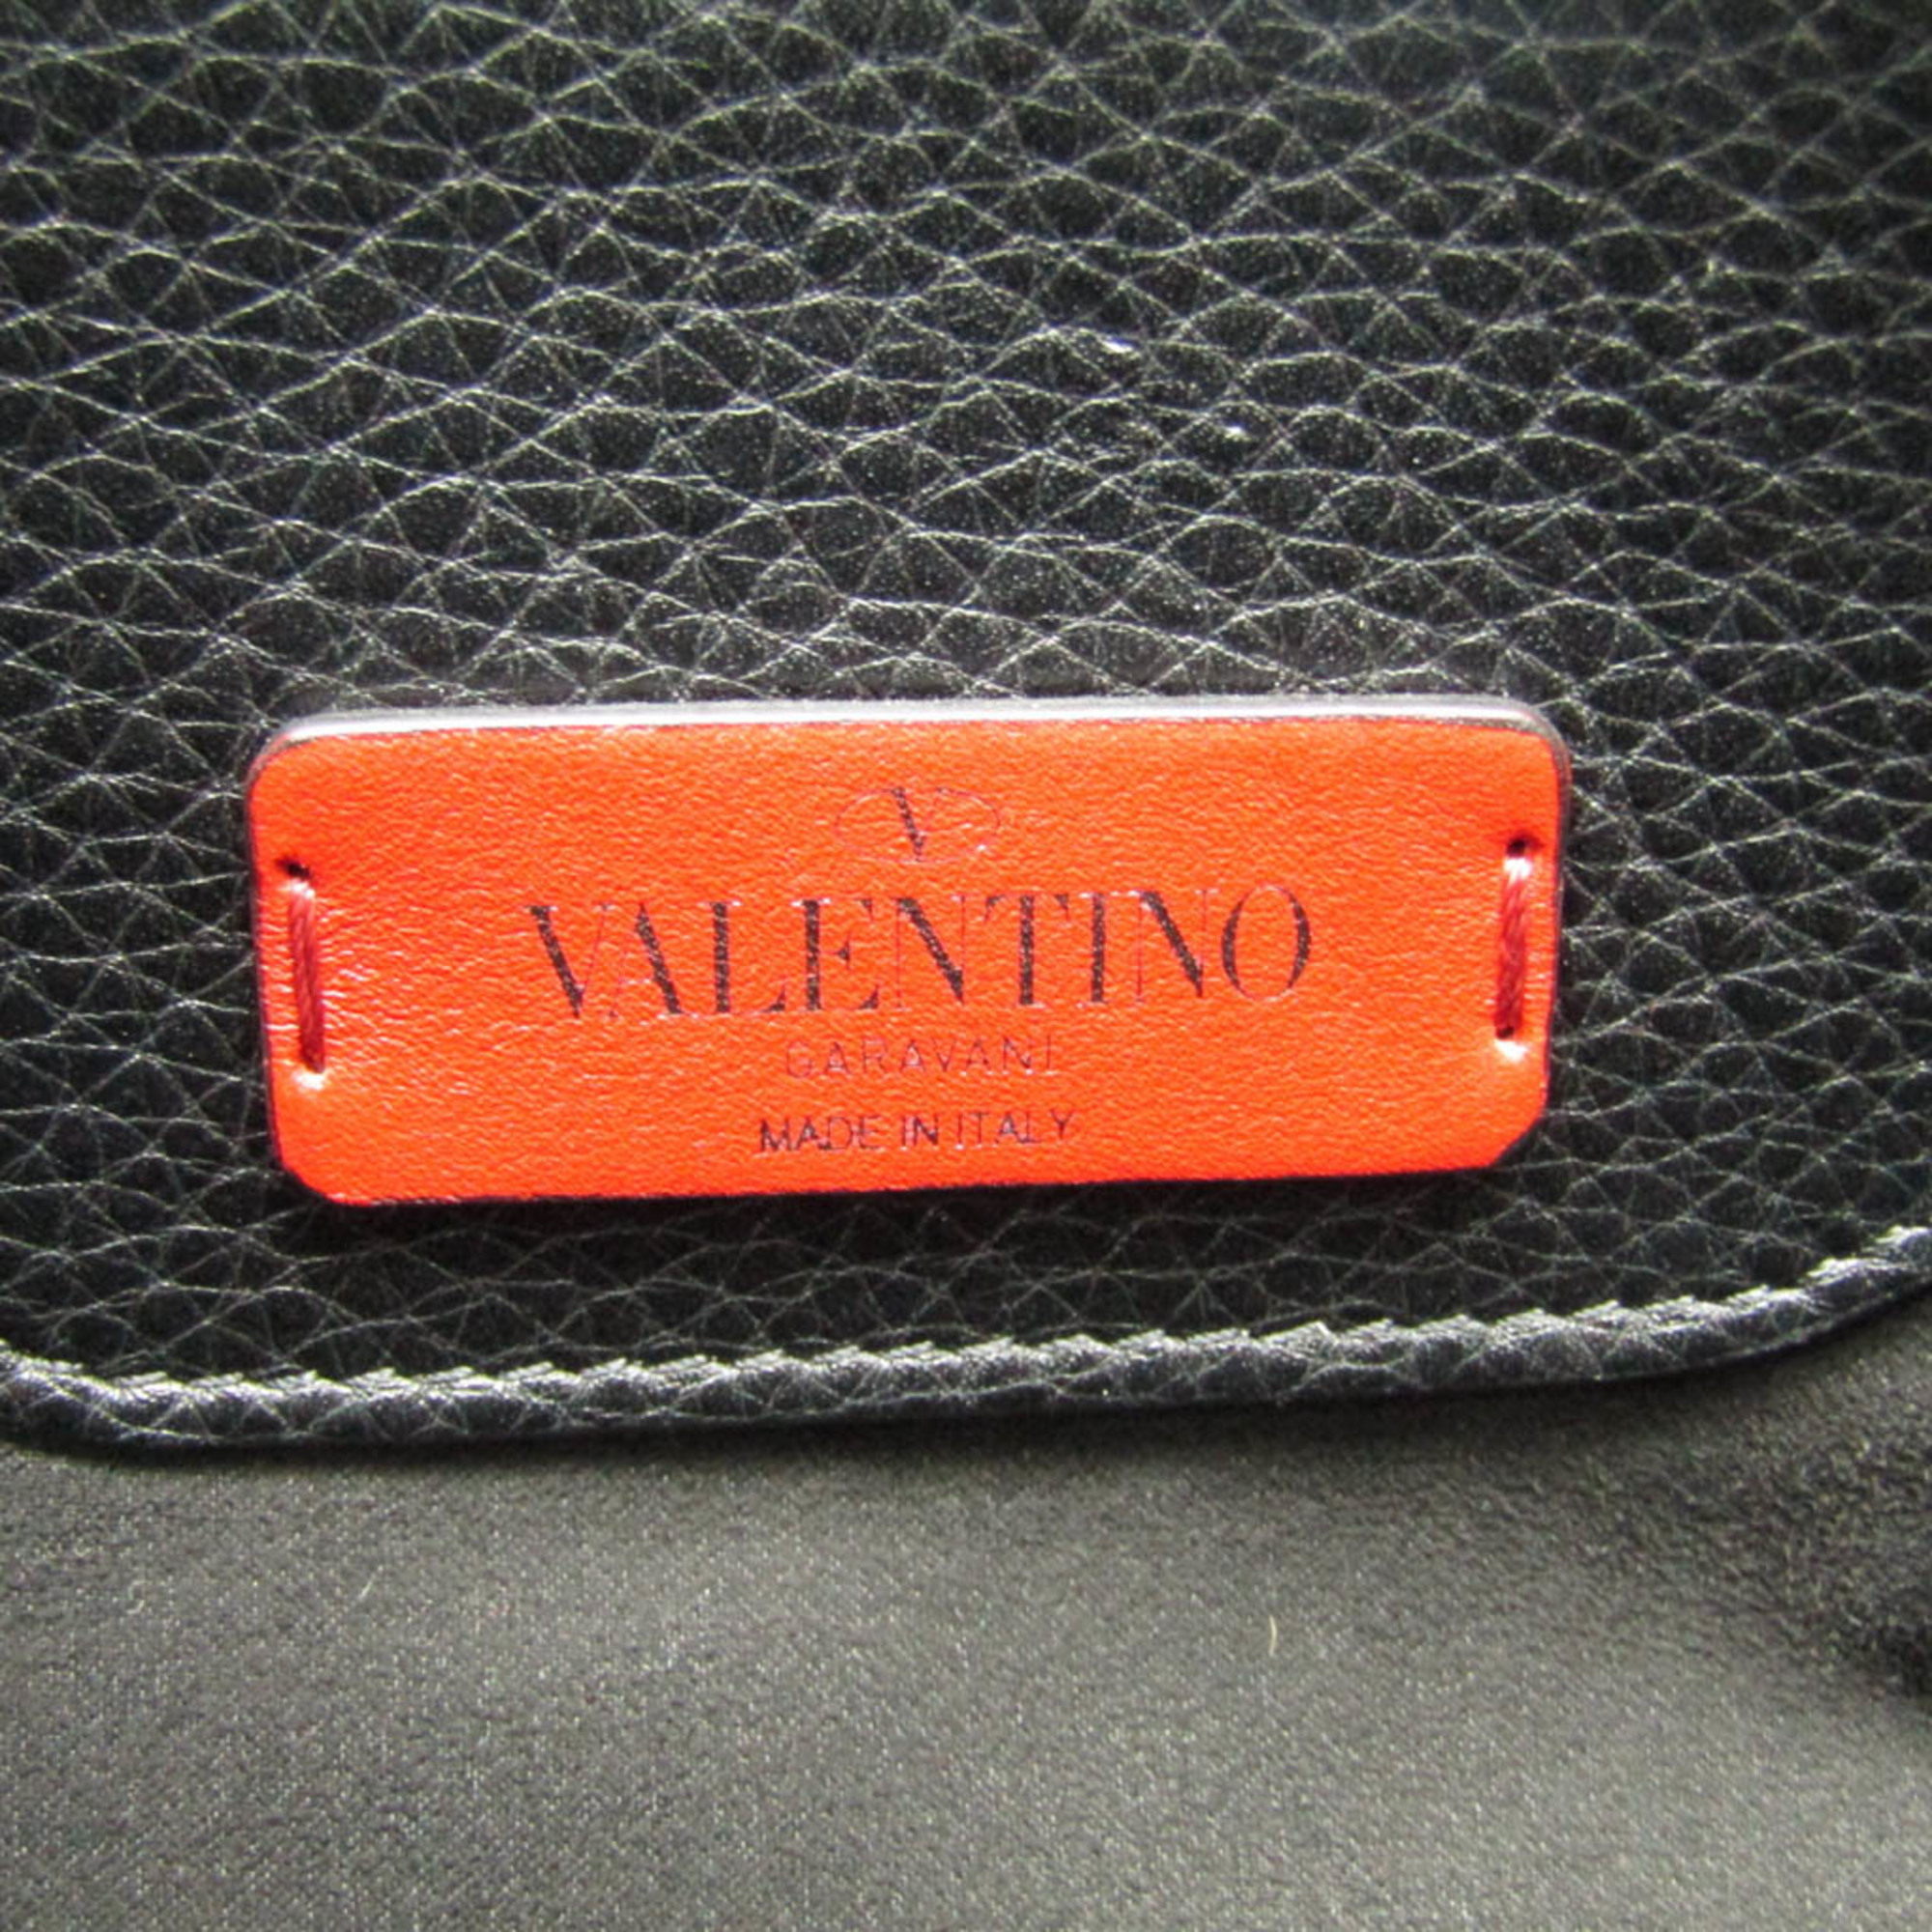 ヴァレンティノ・ガラヴァーニ(Valentino Garavani) ロックスタッズ レディース,メンズ レザー ショルダーバッグ,トートバッグ ブラック